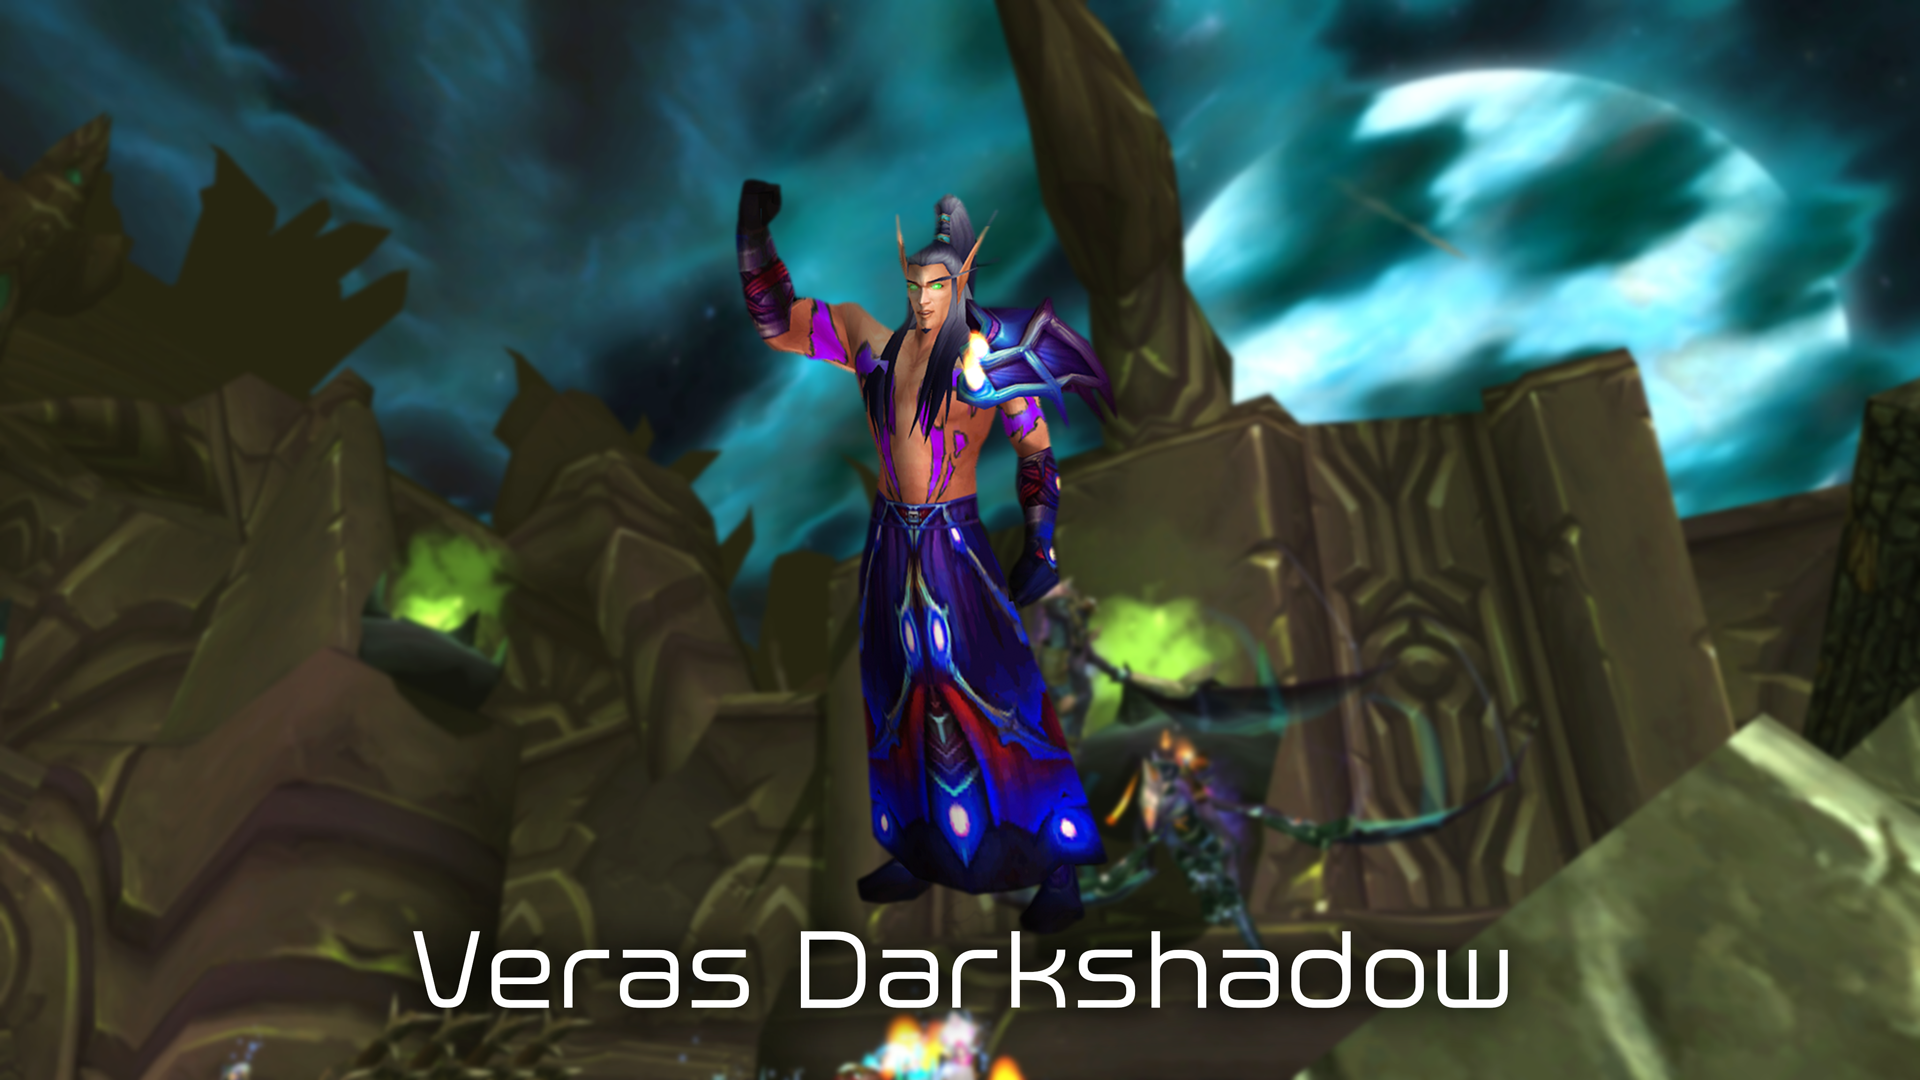 Veras Darkshadow